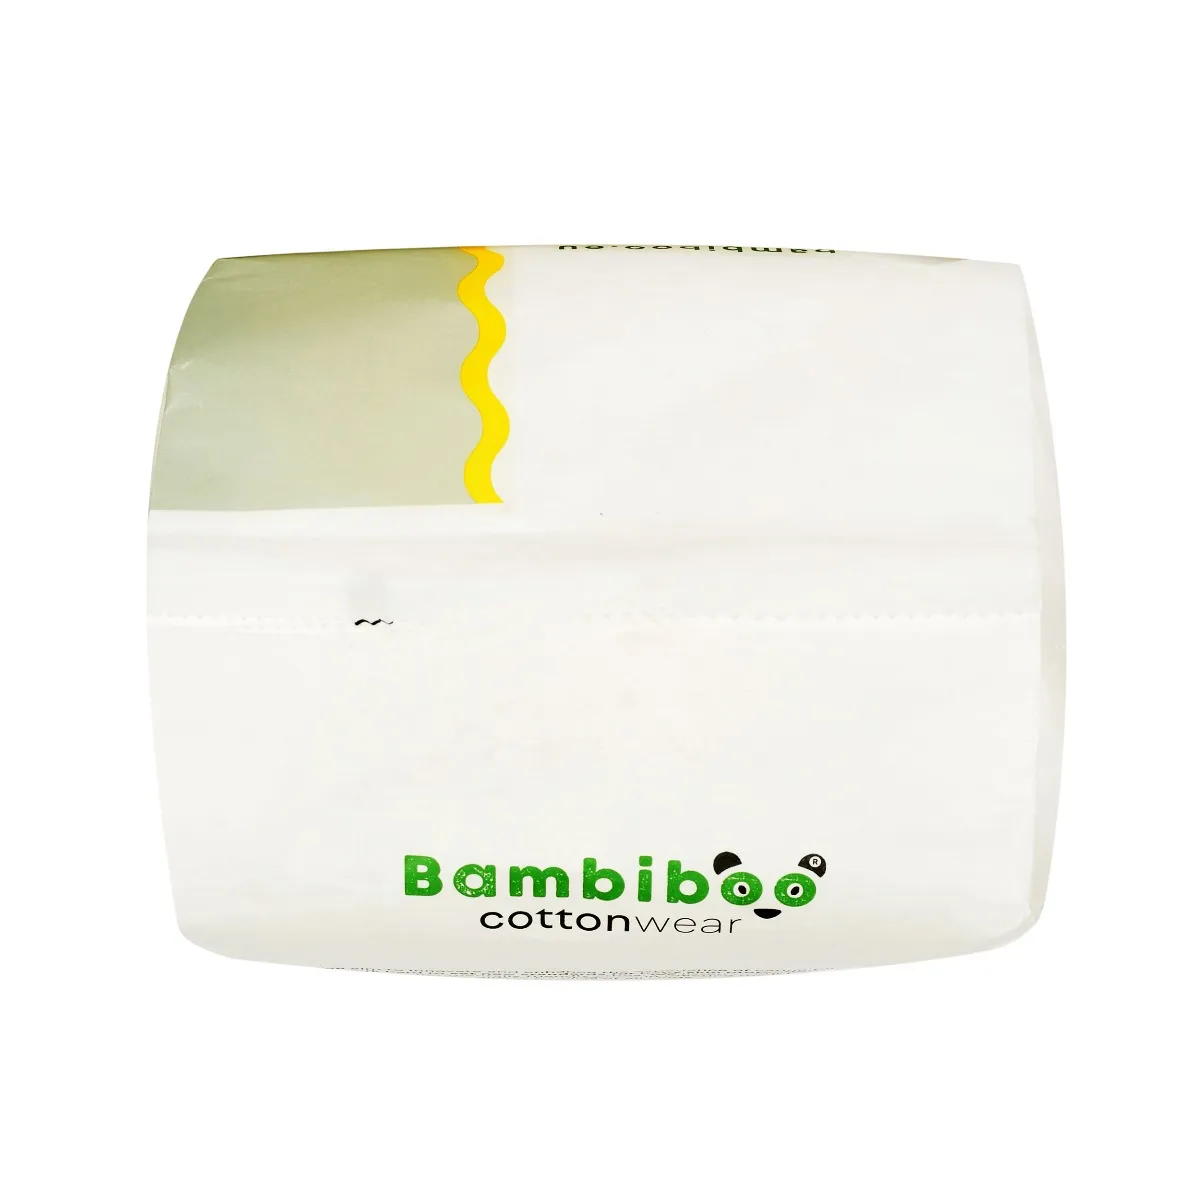 Bambiboo COTTONWEAR jednorazowe pieluchomajtki z bawełną organiczną rozmiar 4, 22 szt. 